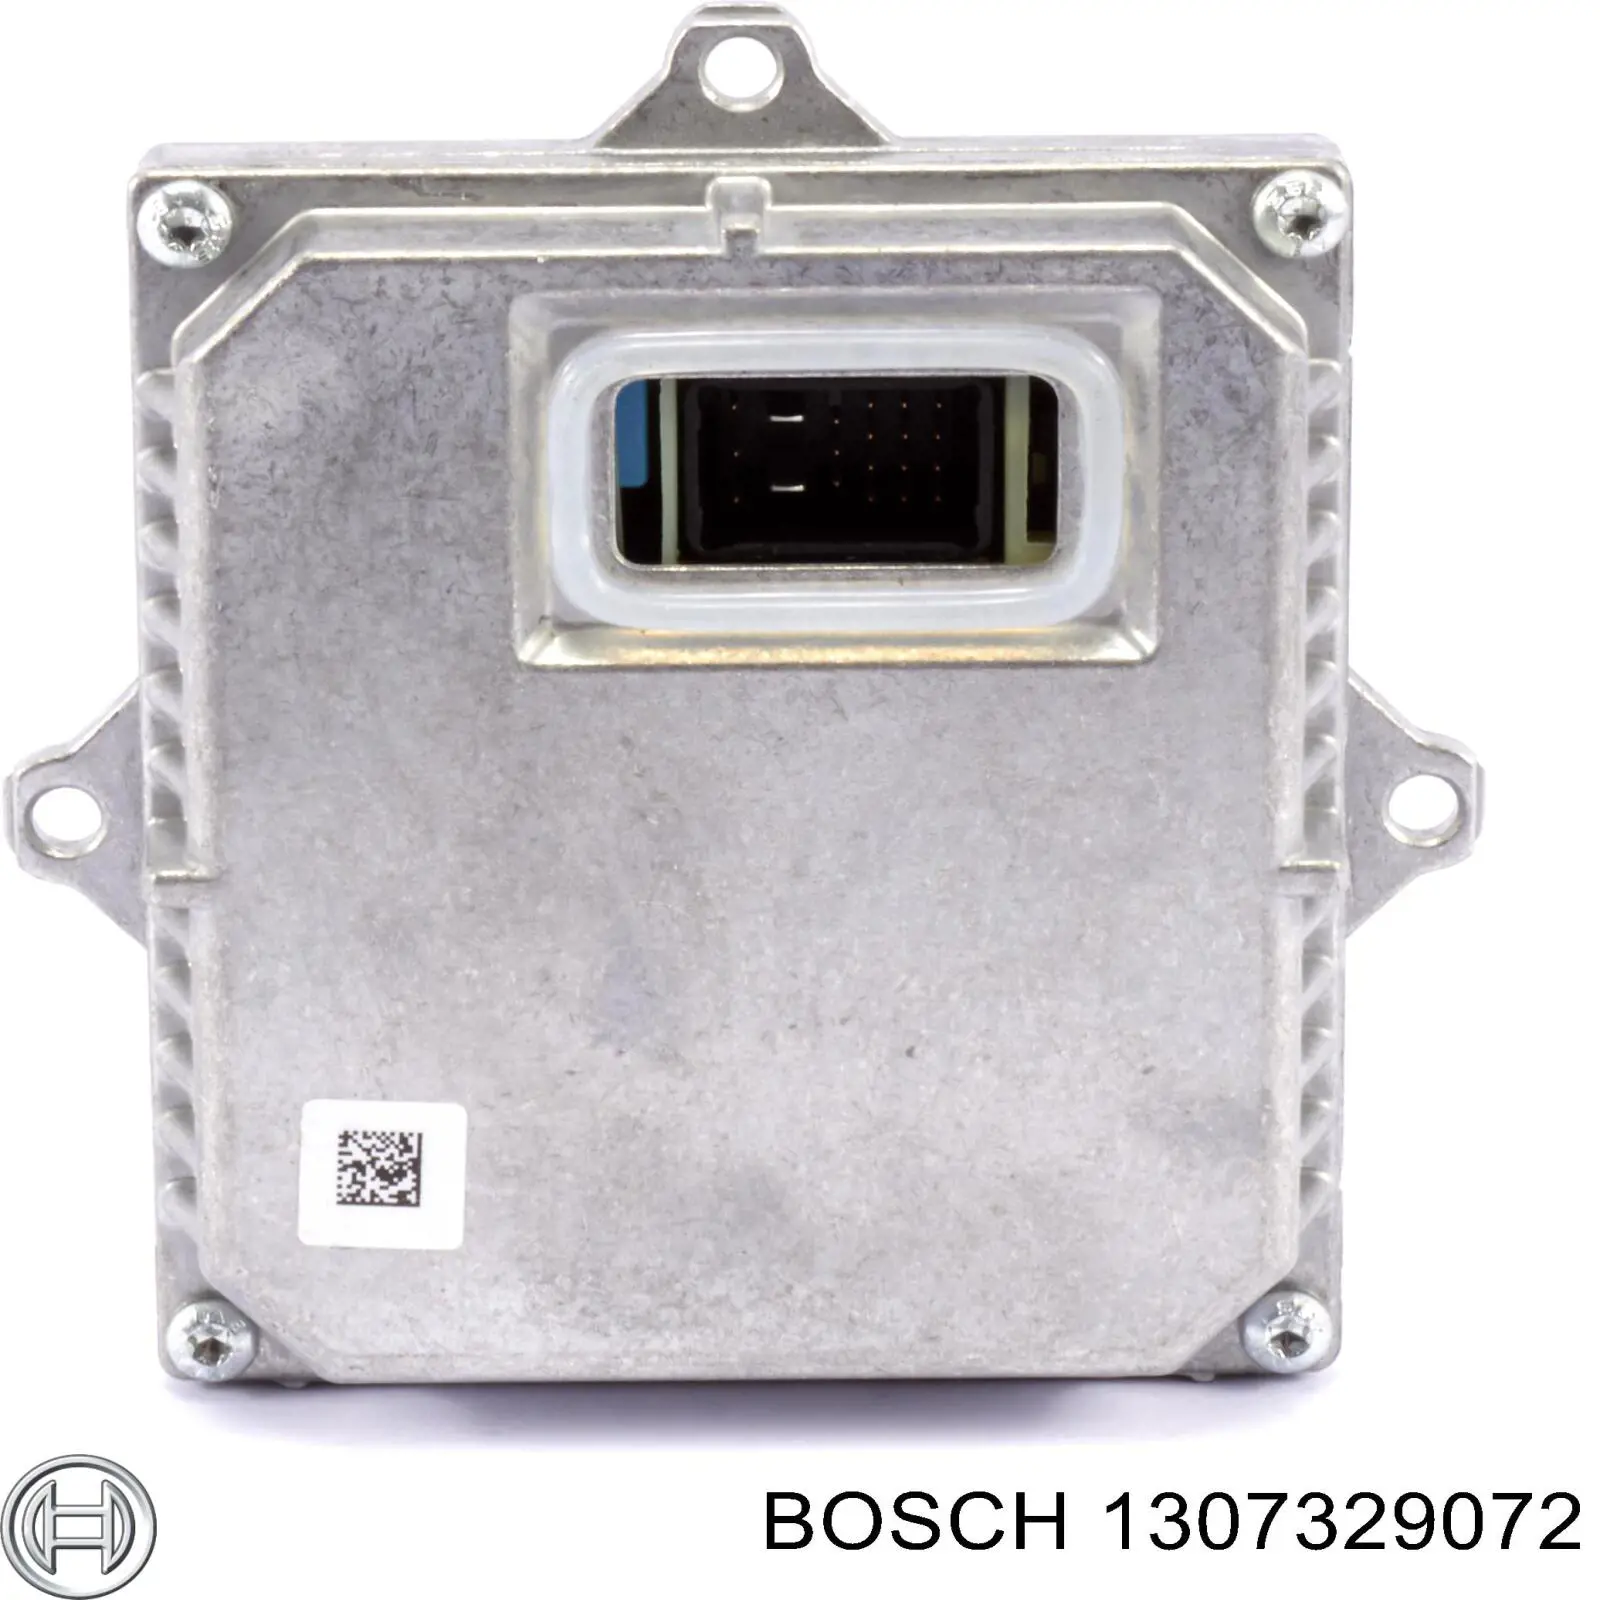 1307329072 Bosch